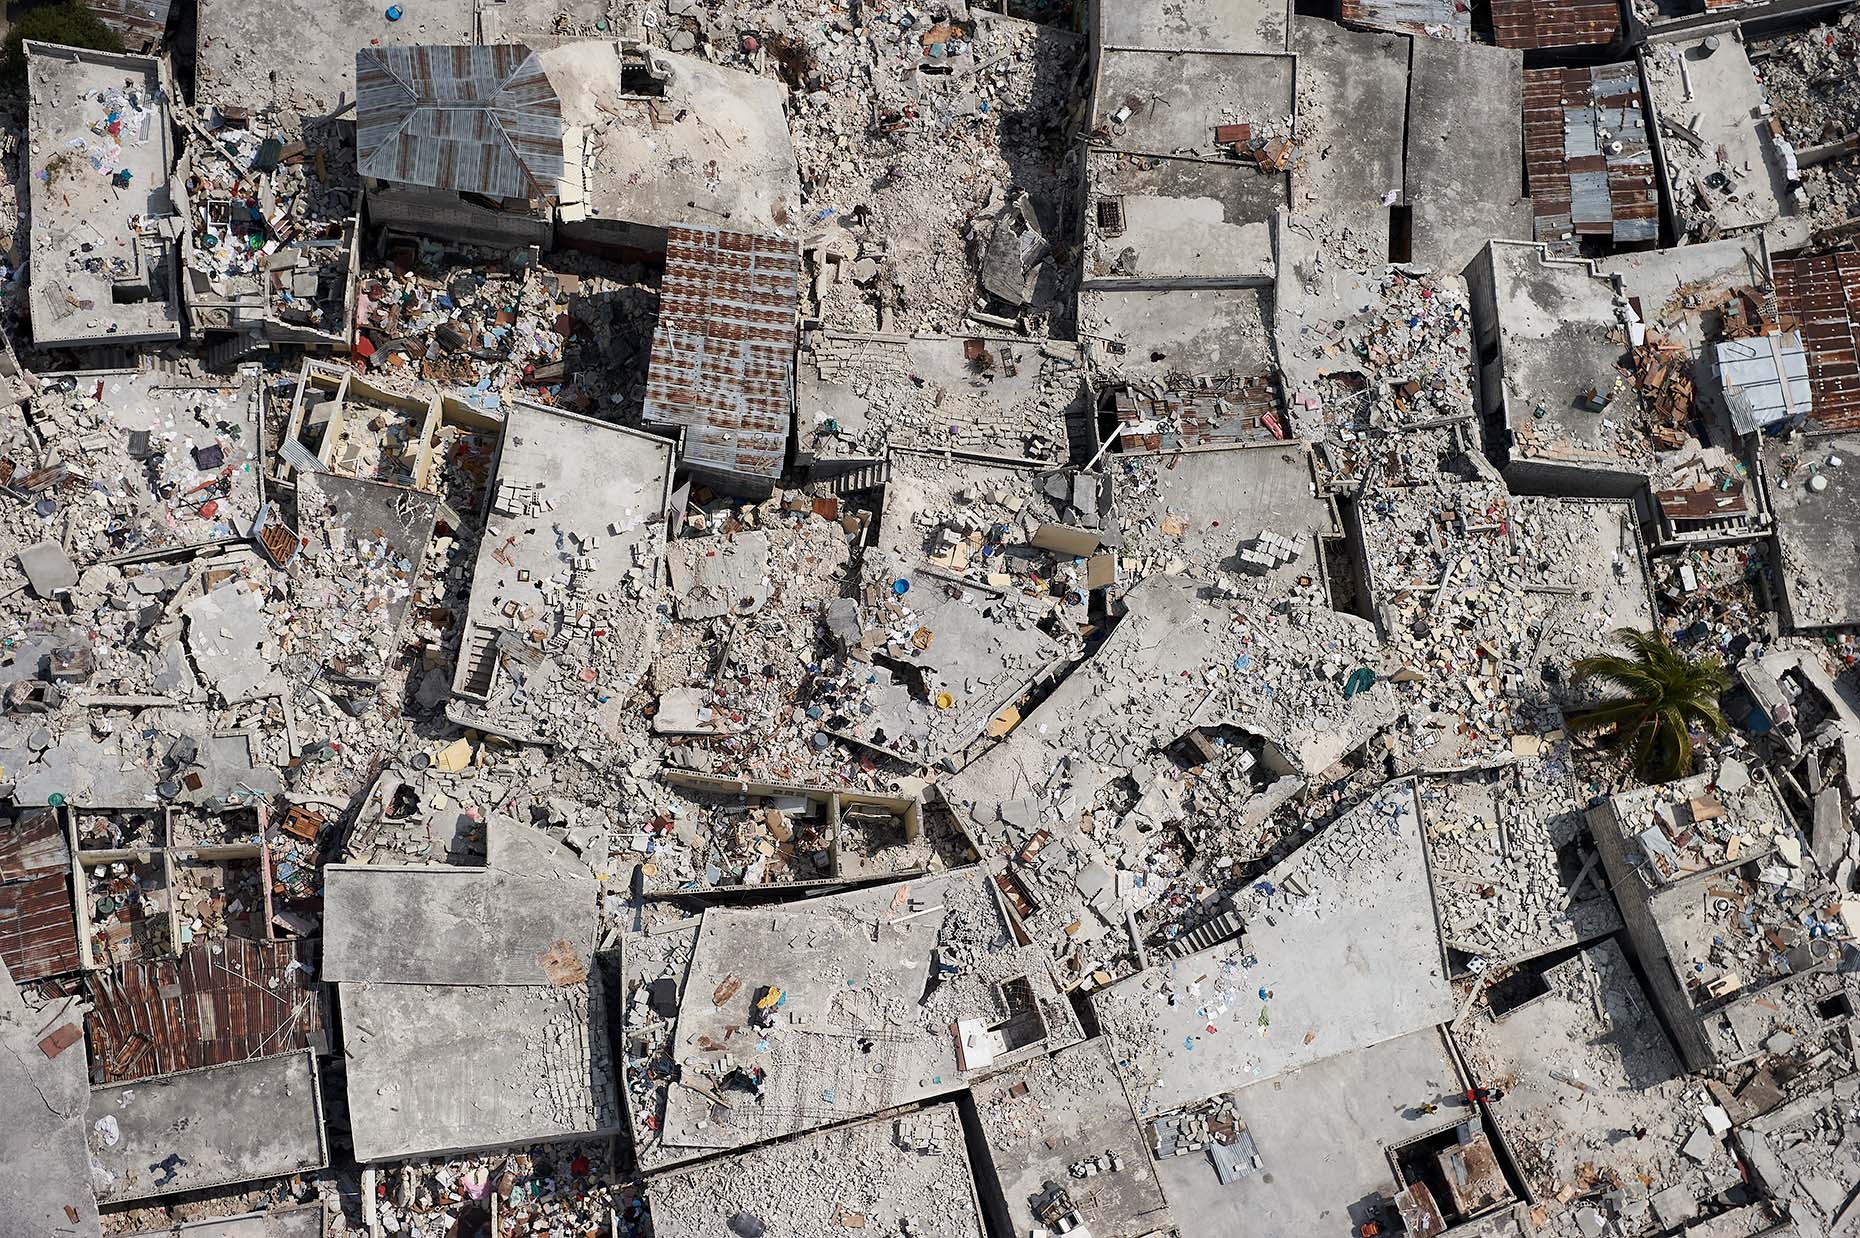 2010 Haiti Earthquake Aftermath | Cameron Davidson